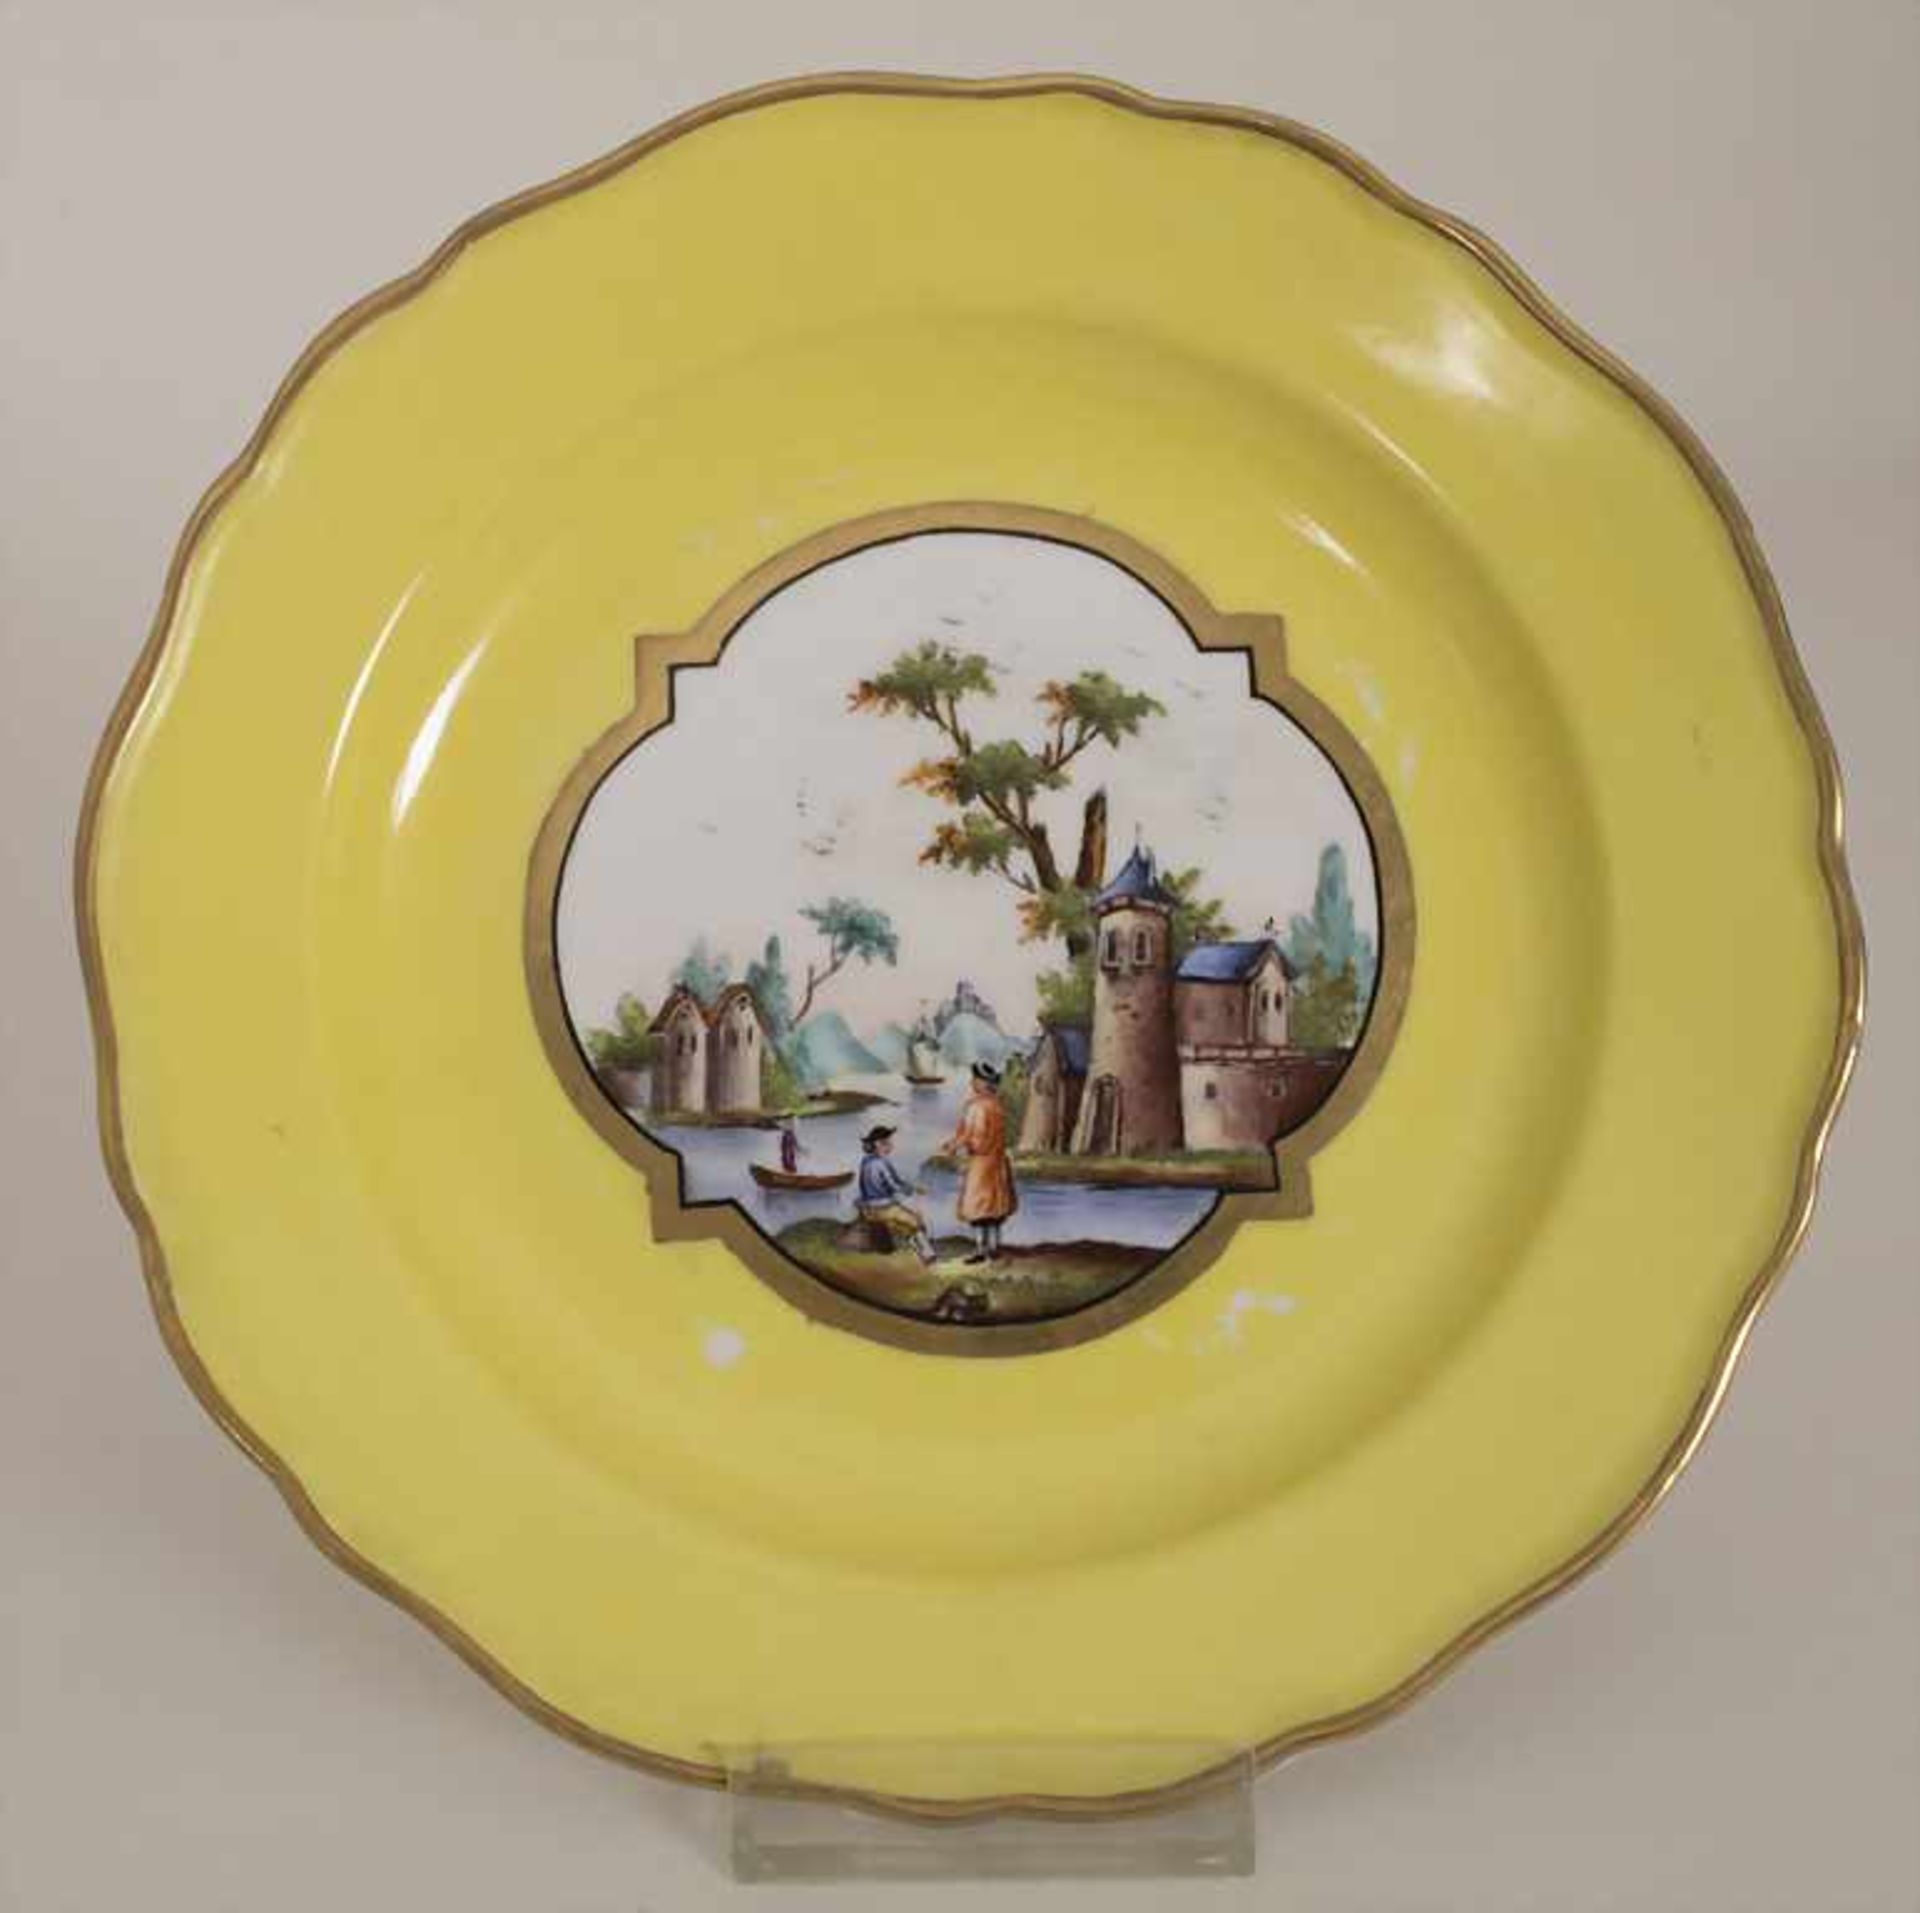 6 Ansichtenteller / 6 plates with harbour scenes, Meissen, um 1850Material: Porzellan, bemalt u. - Bild 9 aus 19